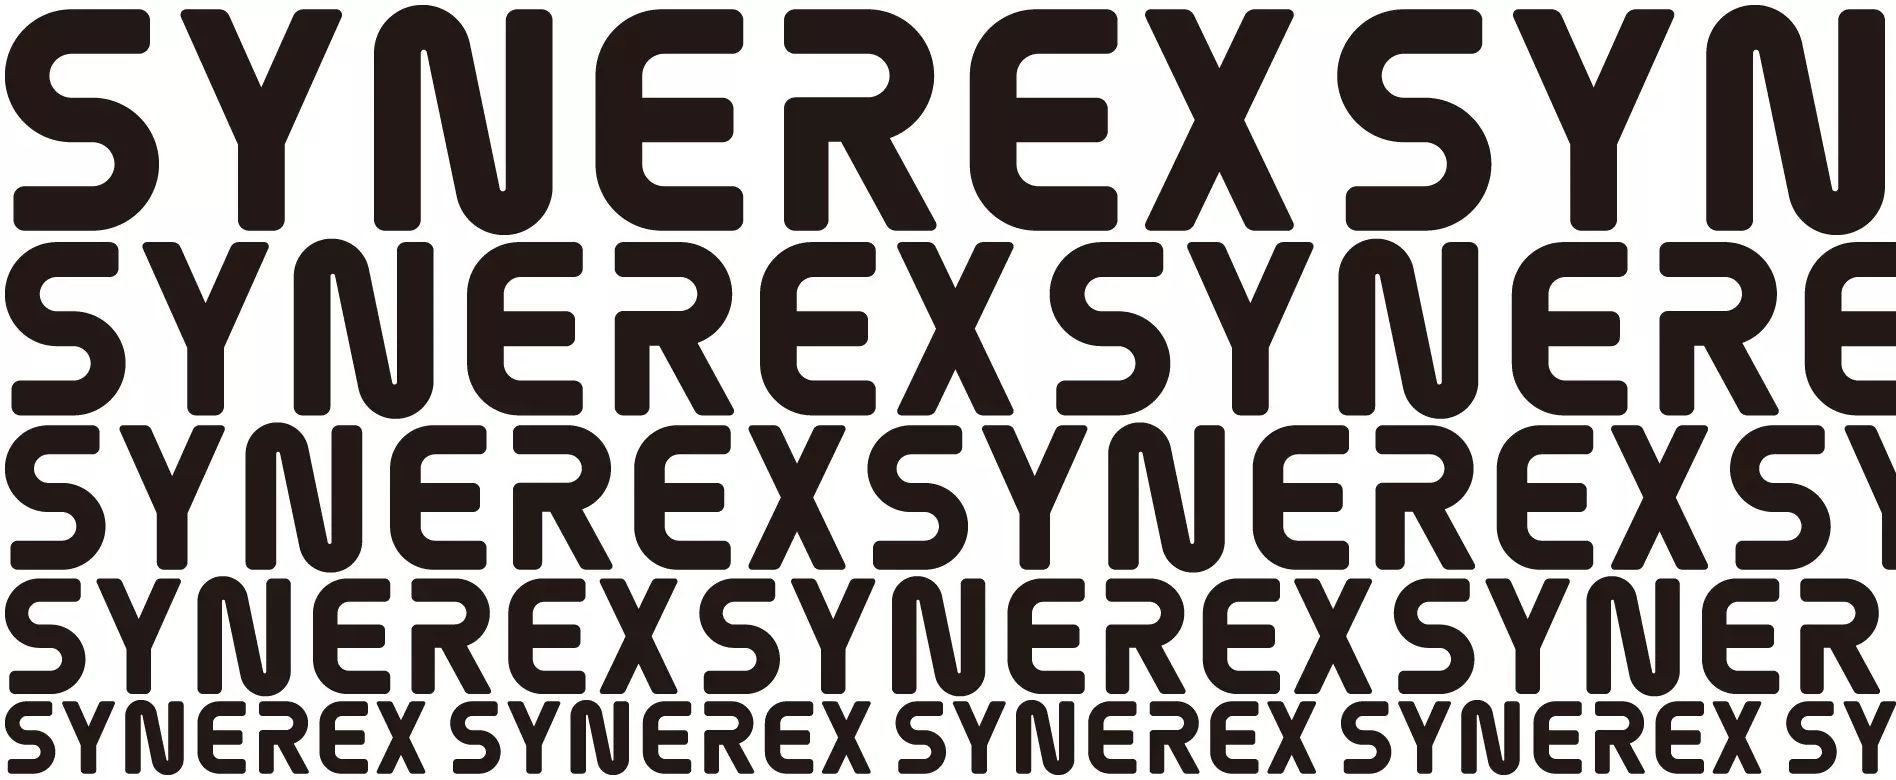 Synerexロゴのサイズバリエーション